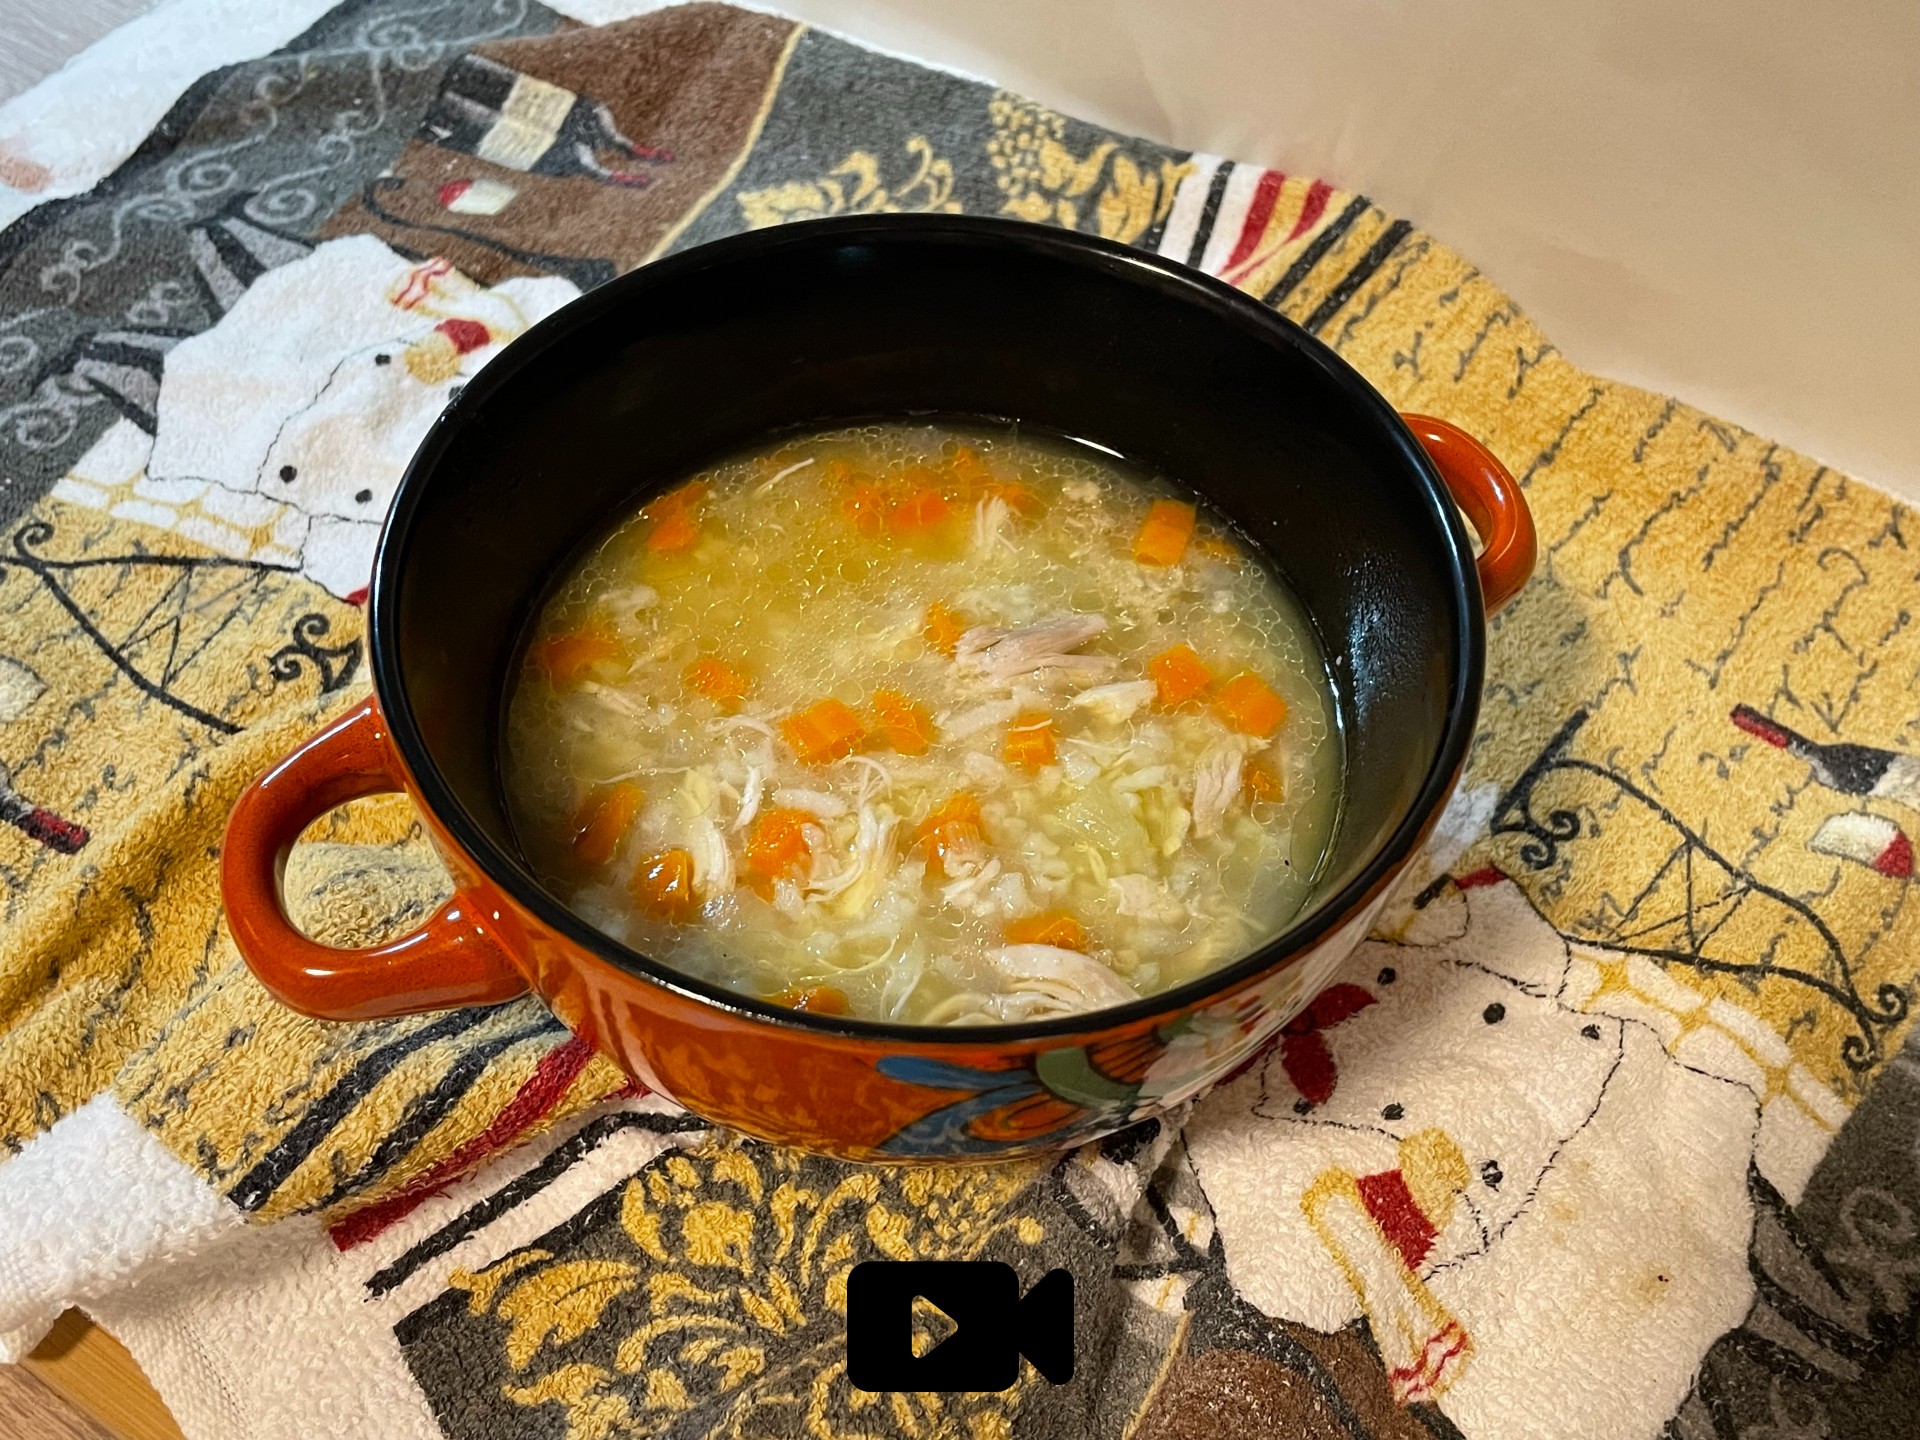 Δοκιμάστε μια εύκολη και πολύ θρεπτική σούπα με ζωμό από κόκαλα κοτόπουλο, λαχανικά και ρύζι. Ιδανική για το χειμώνα.